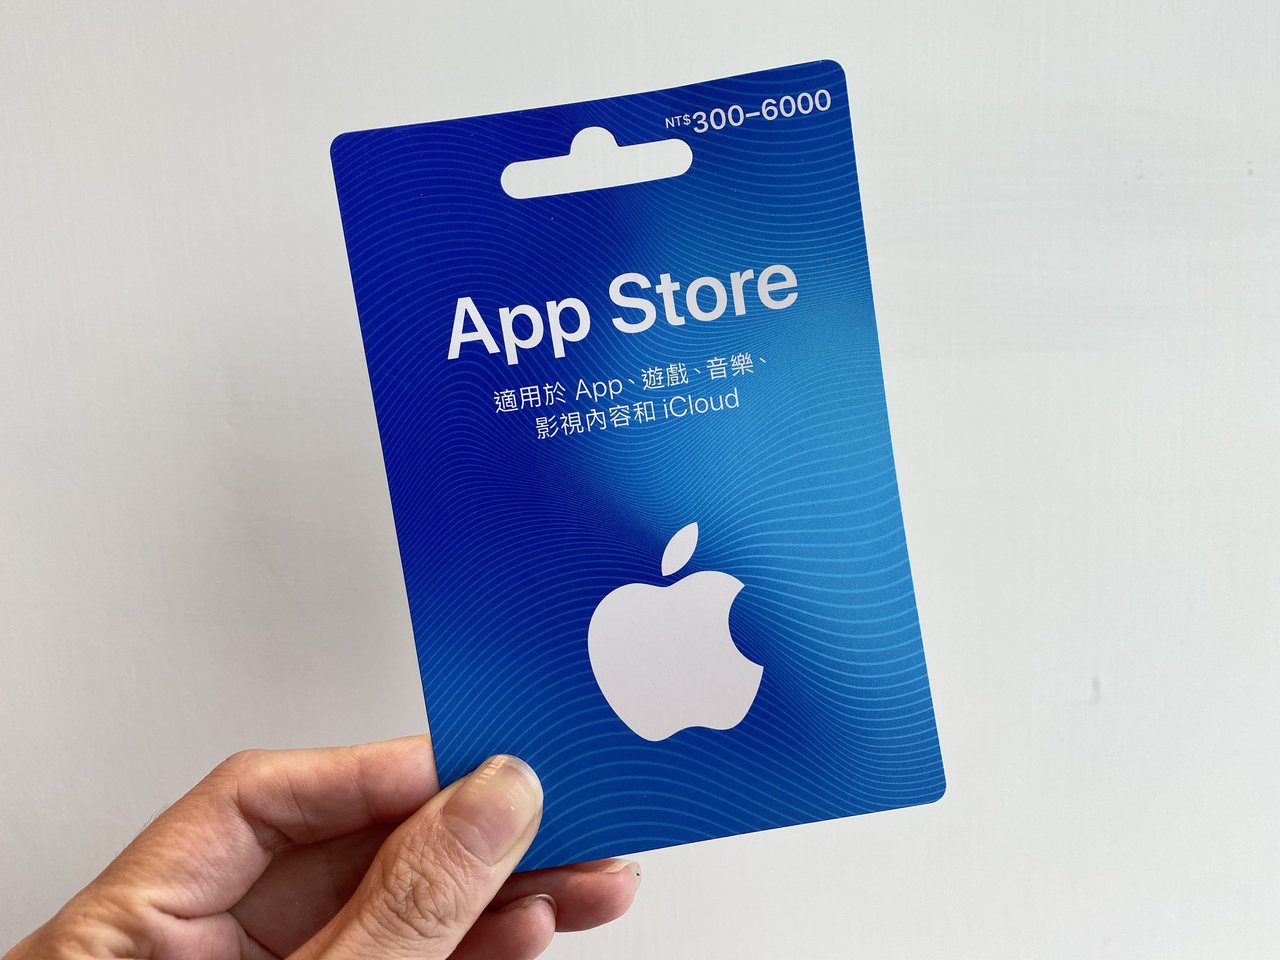 可自選300～6,000元金額結帳的App Store卡實體卡片，非常適合拿來送...